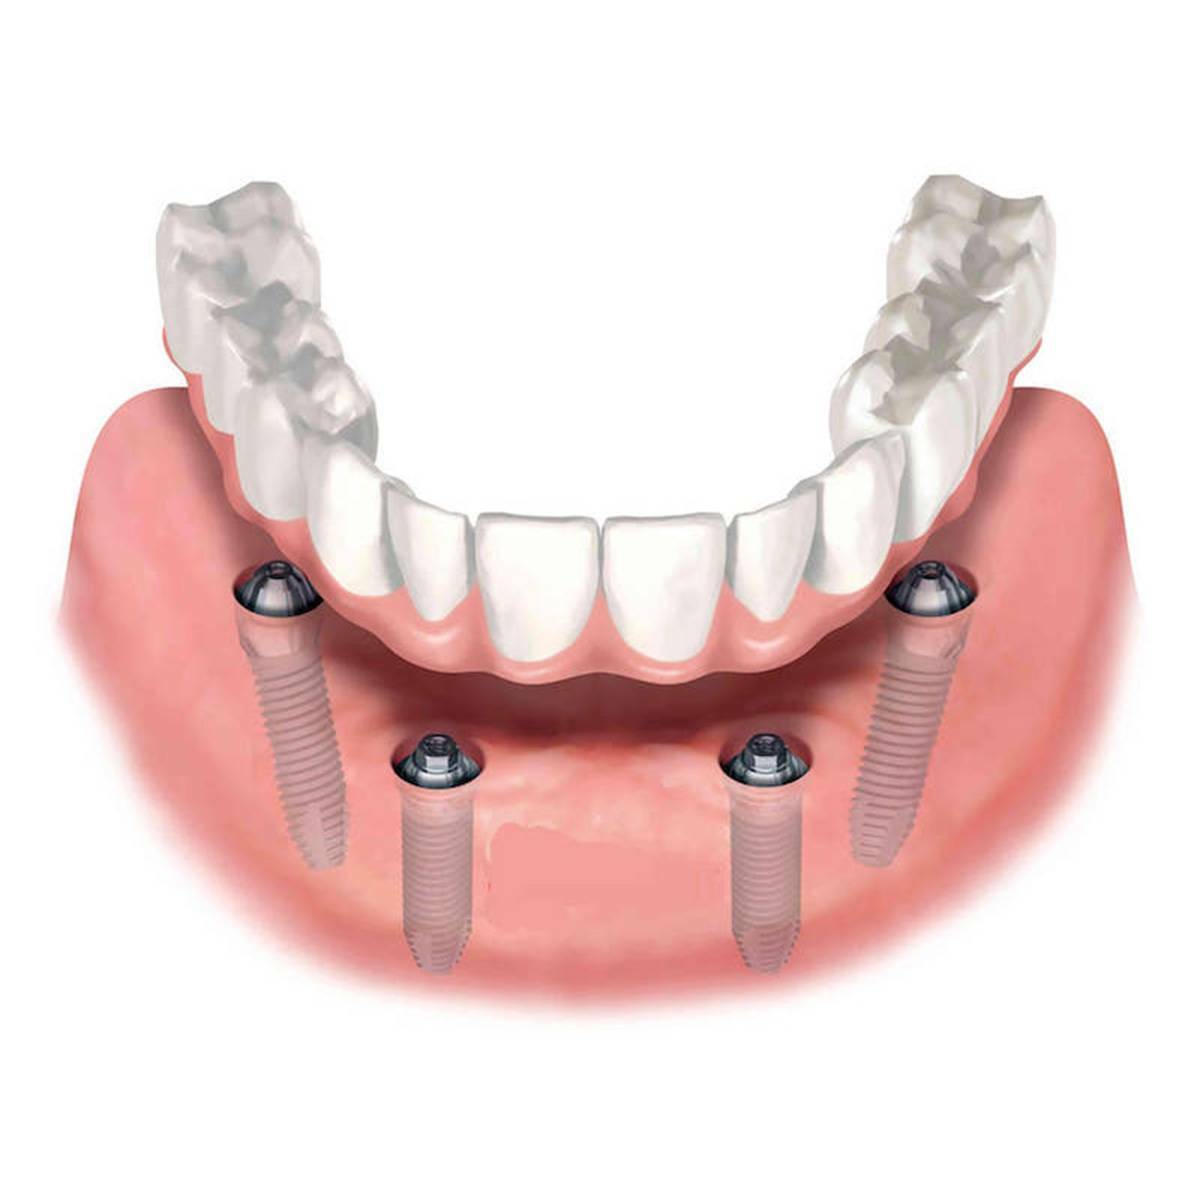 Имплантация зубов all on 6. Консольный мостовидный протез на имплантах. Пластиночный съемный протез на имплантах. Имплантация челюсти на 6 имплантах. Несъемный протез на 4 имплантах.